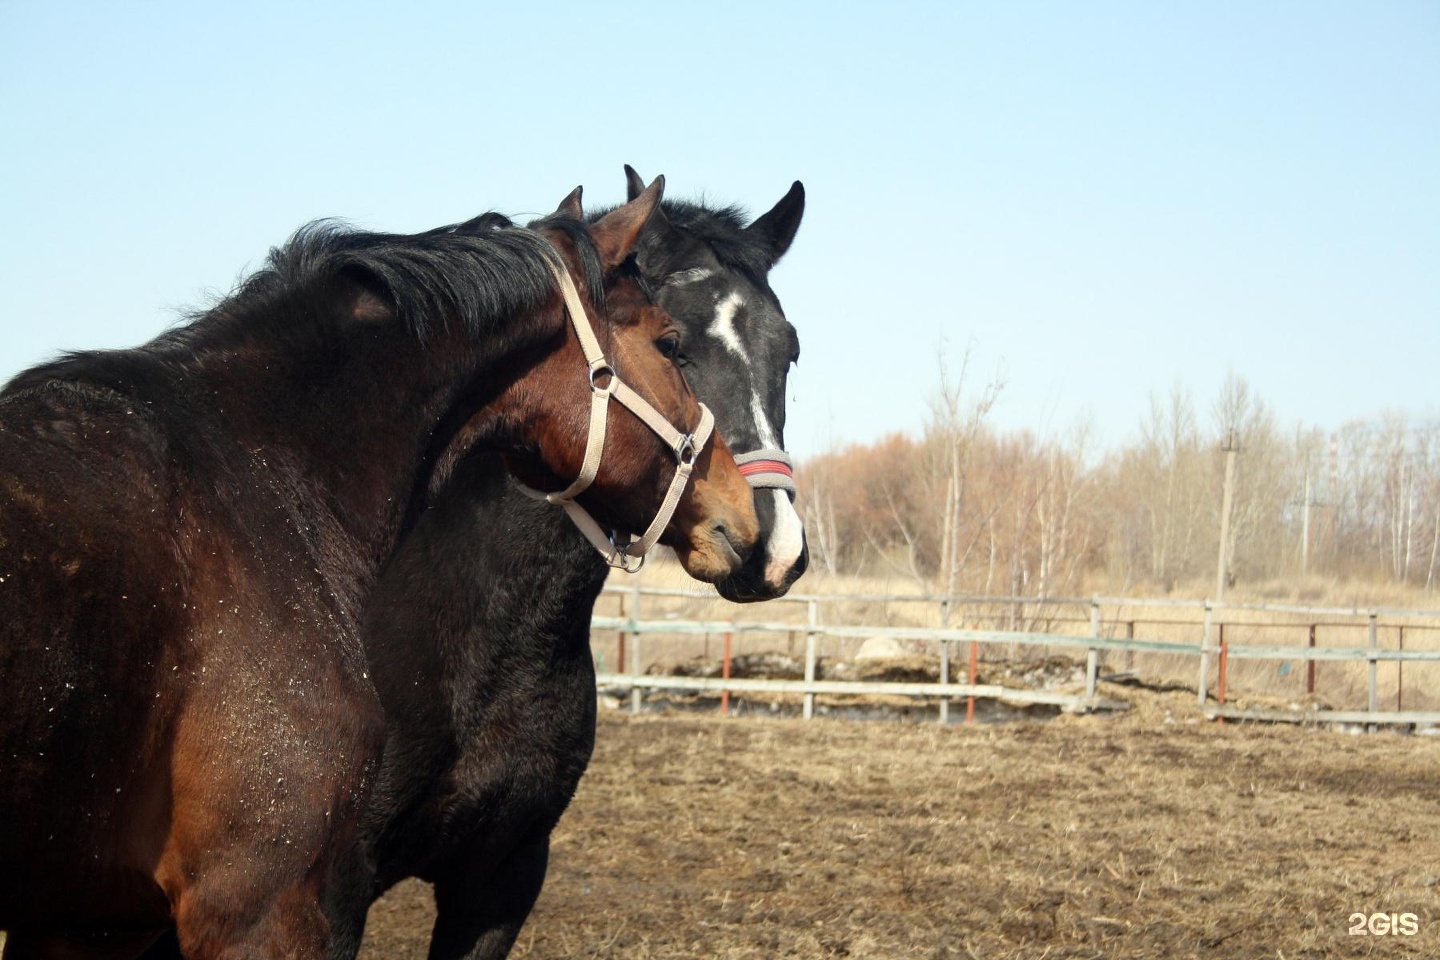 Продажа лошадей омск области